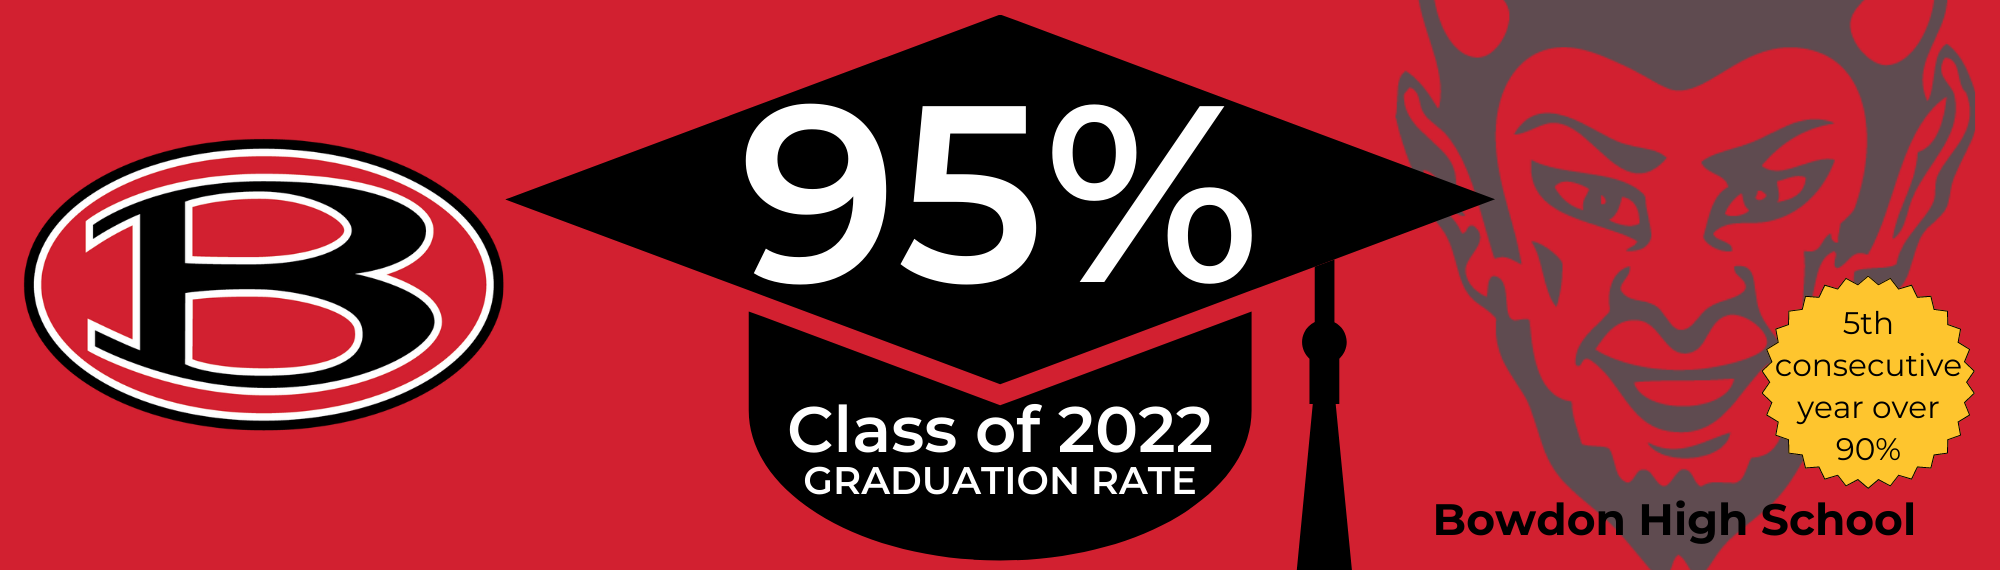 2022 BHS Graduation Rate Announcement 95%